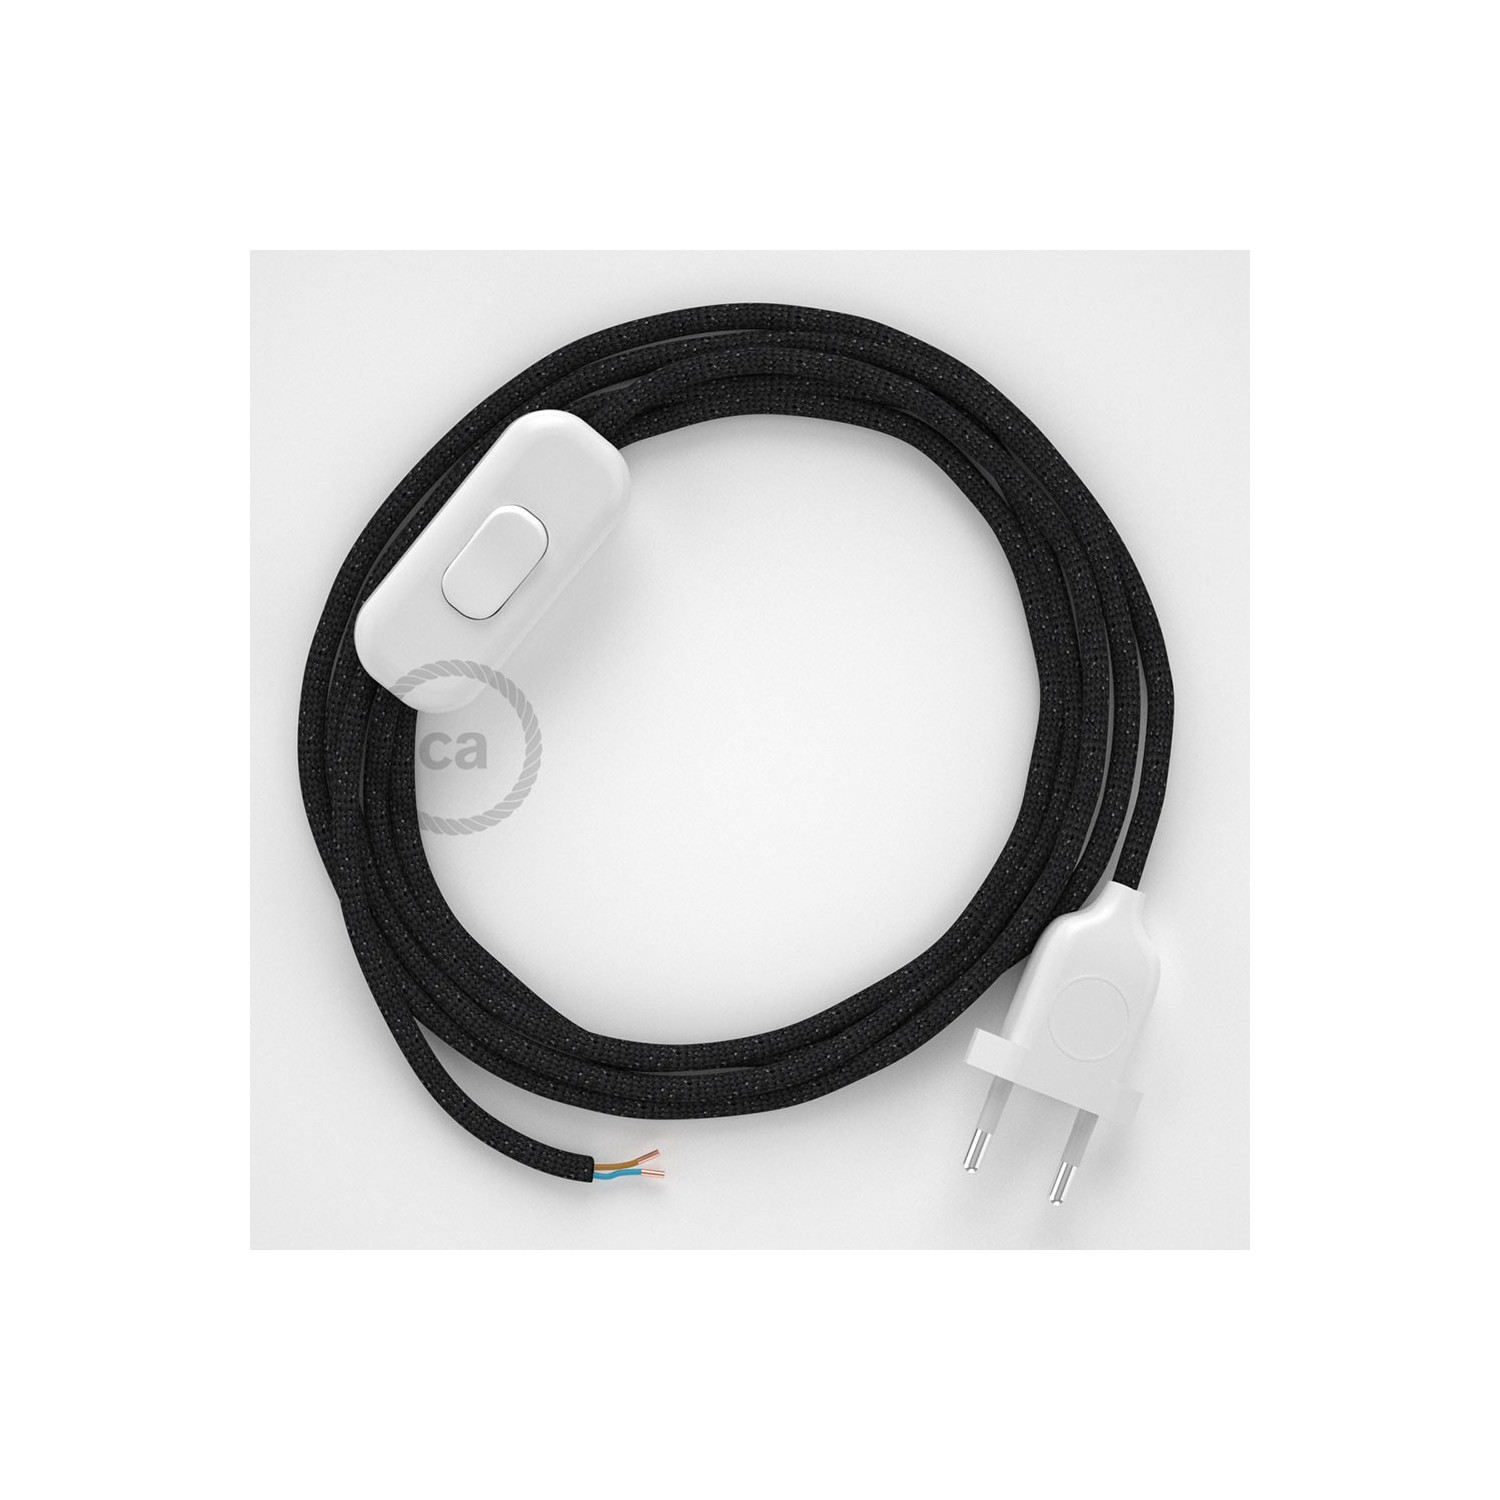 Cableado para lámpara, cable RL04 Efecto Seda Glitter Negro 1,8m. Elige tu el color de la clavija y del interruptor!